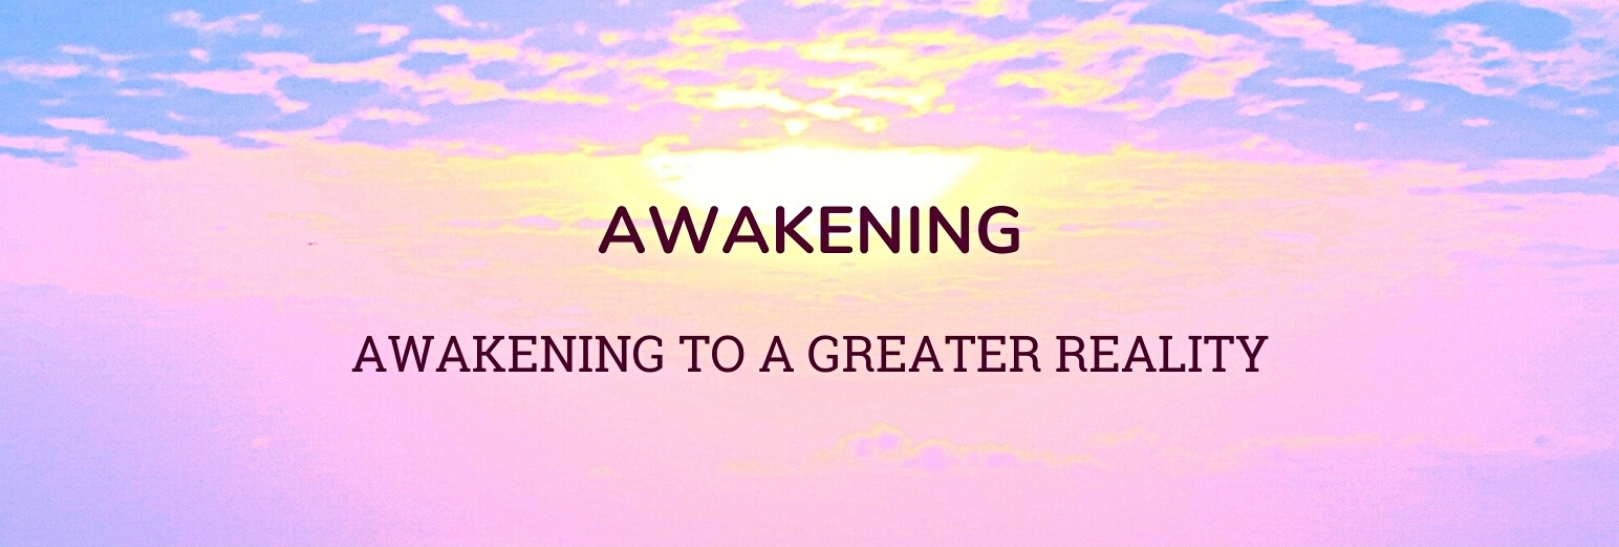 1.  Awakening: Awakening to a Greater Reality